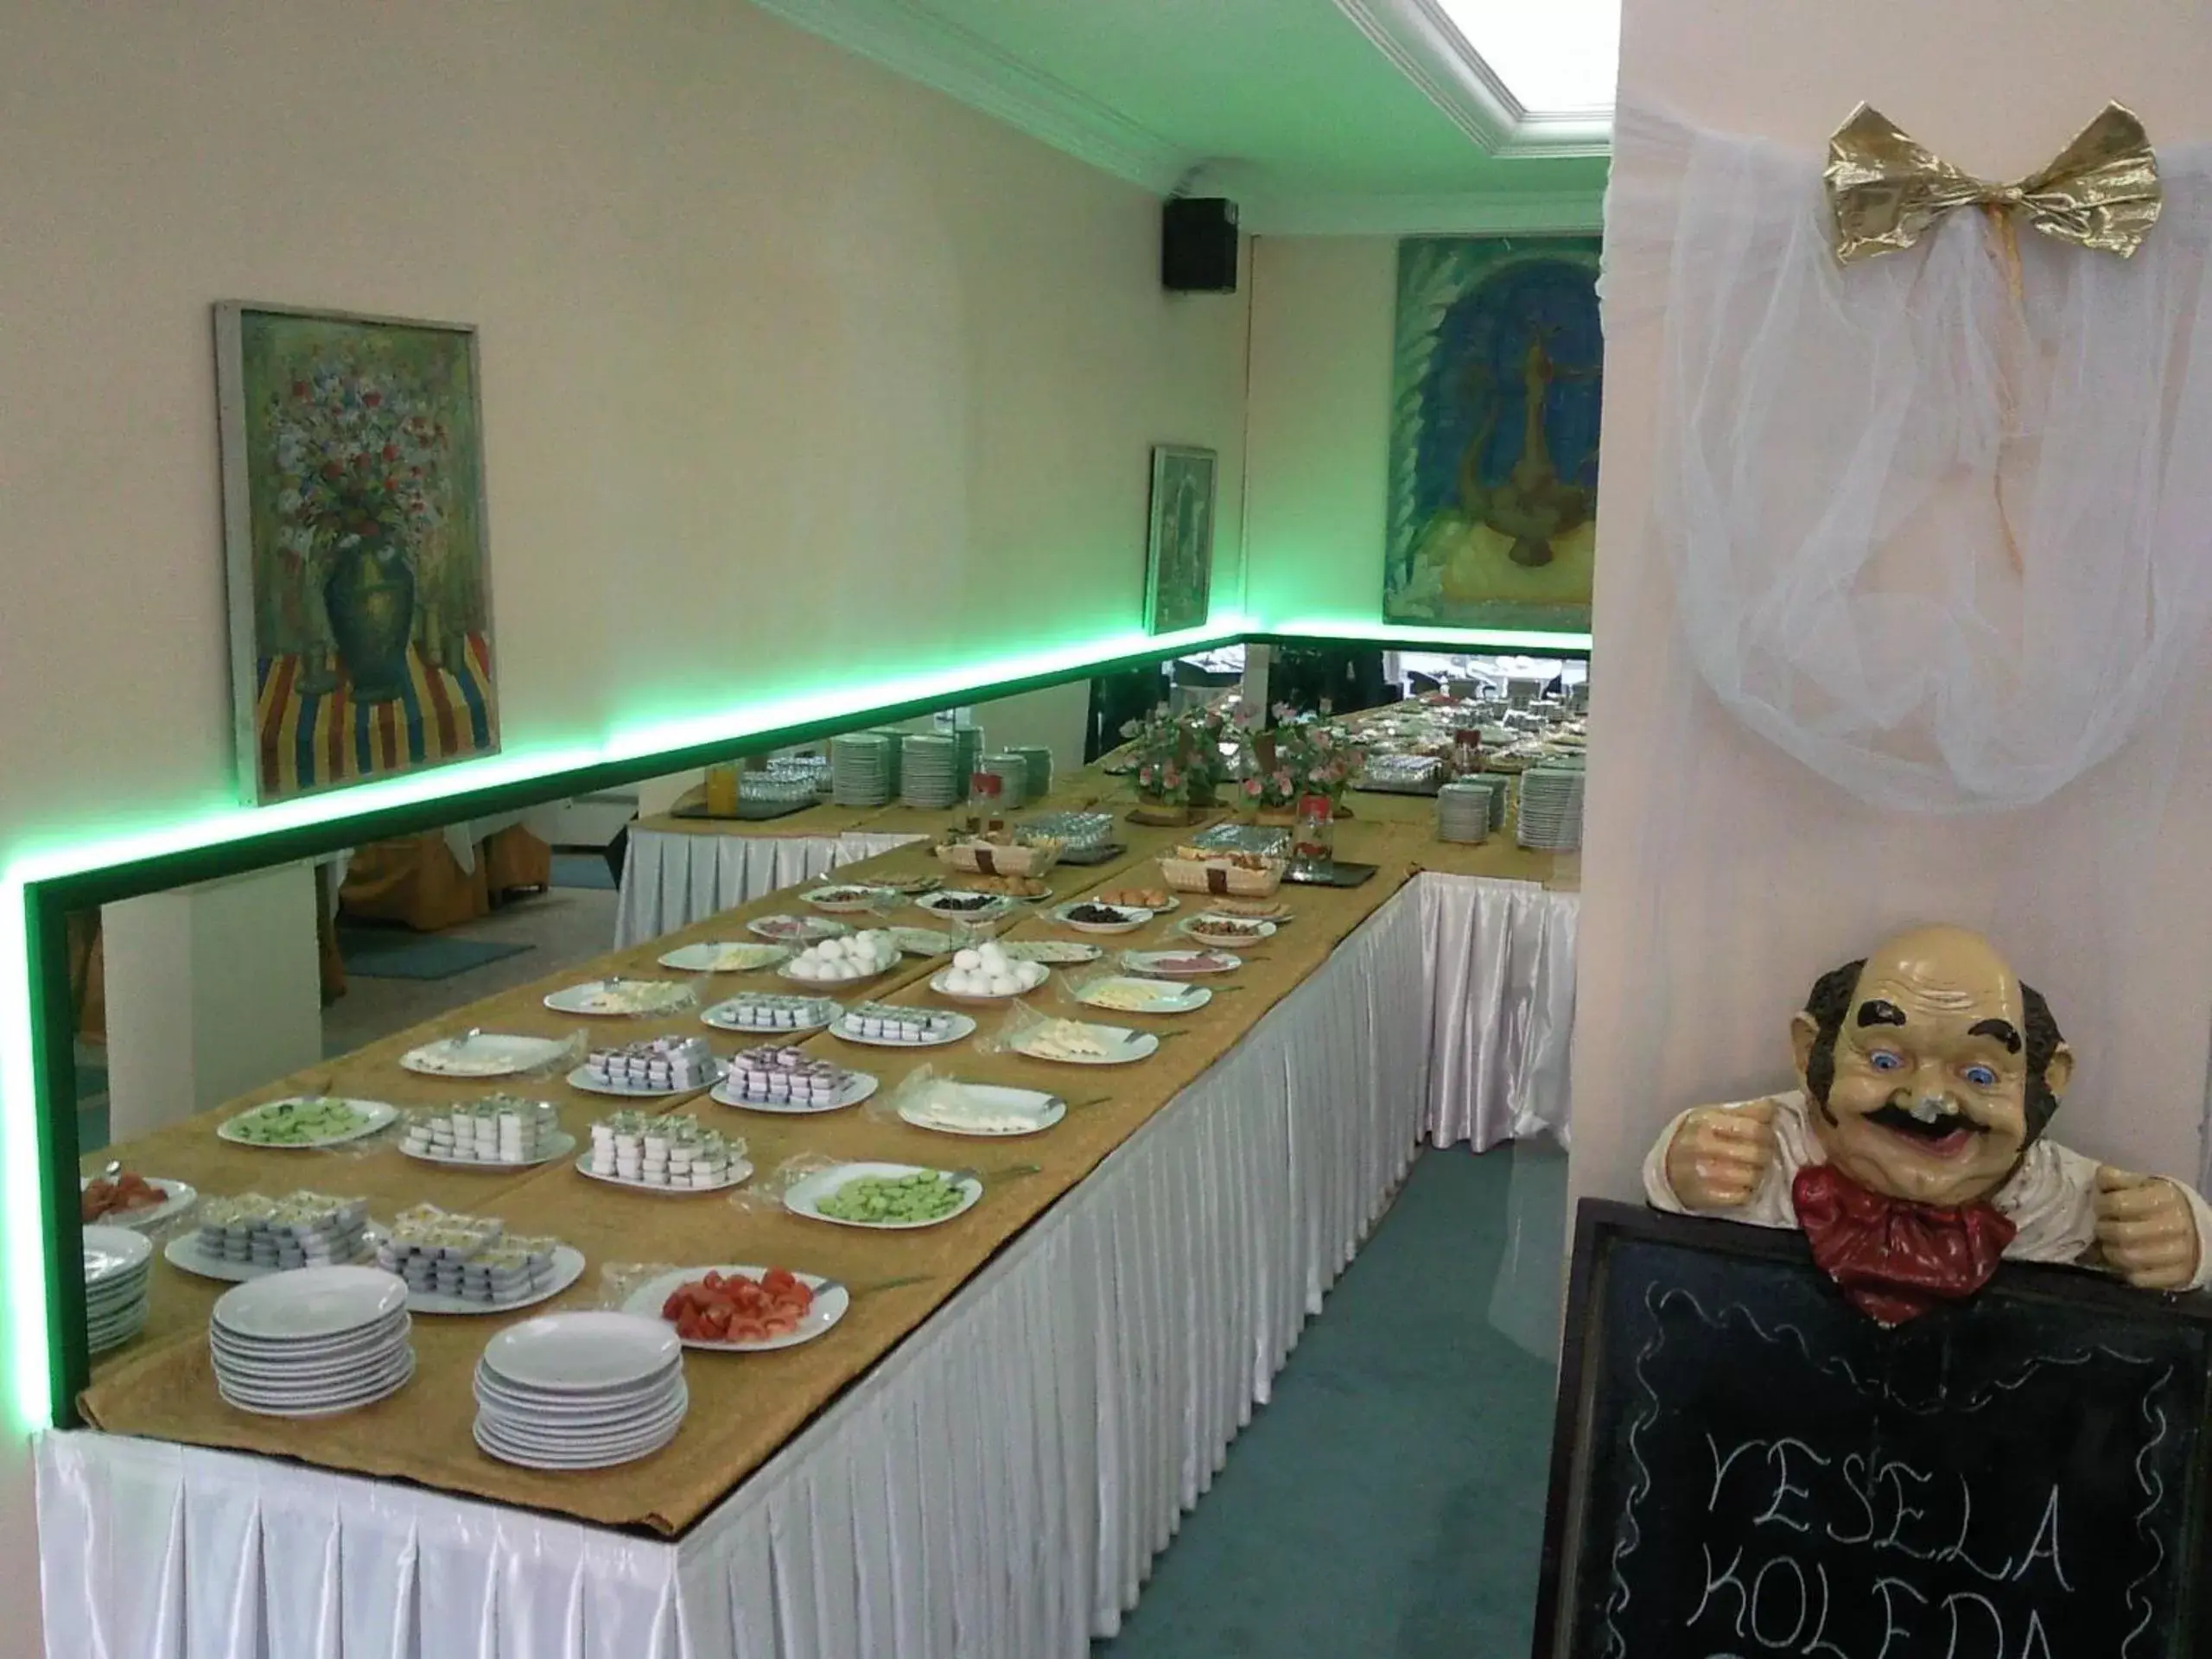 Buffet breakfast in Ayvazali Hotel